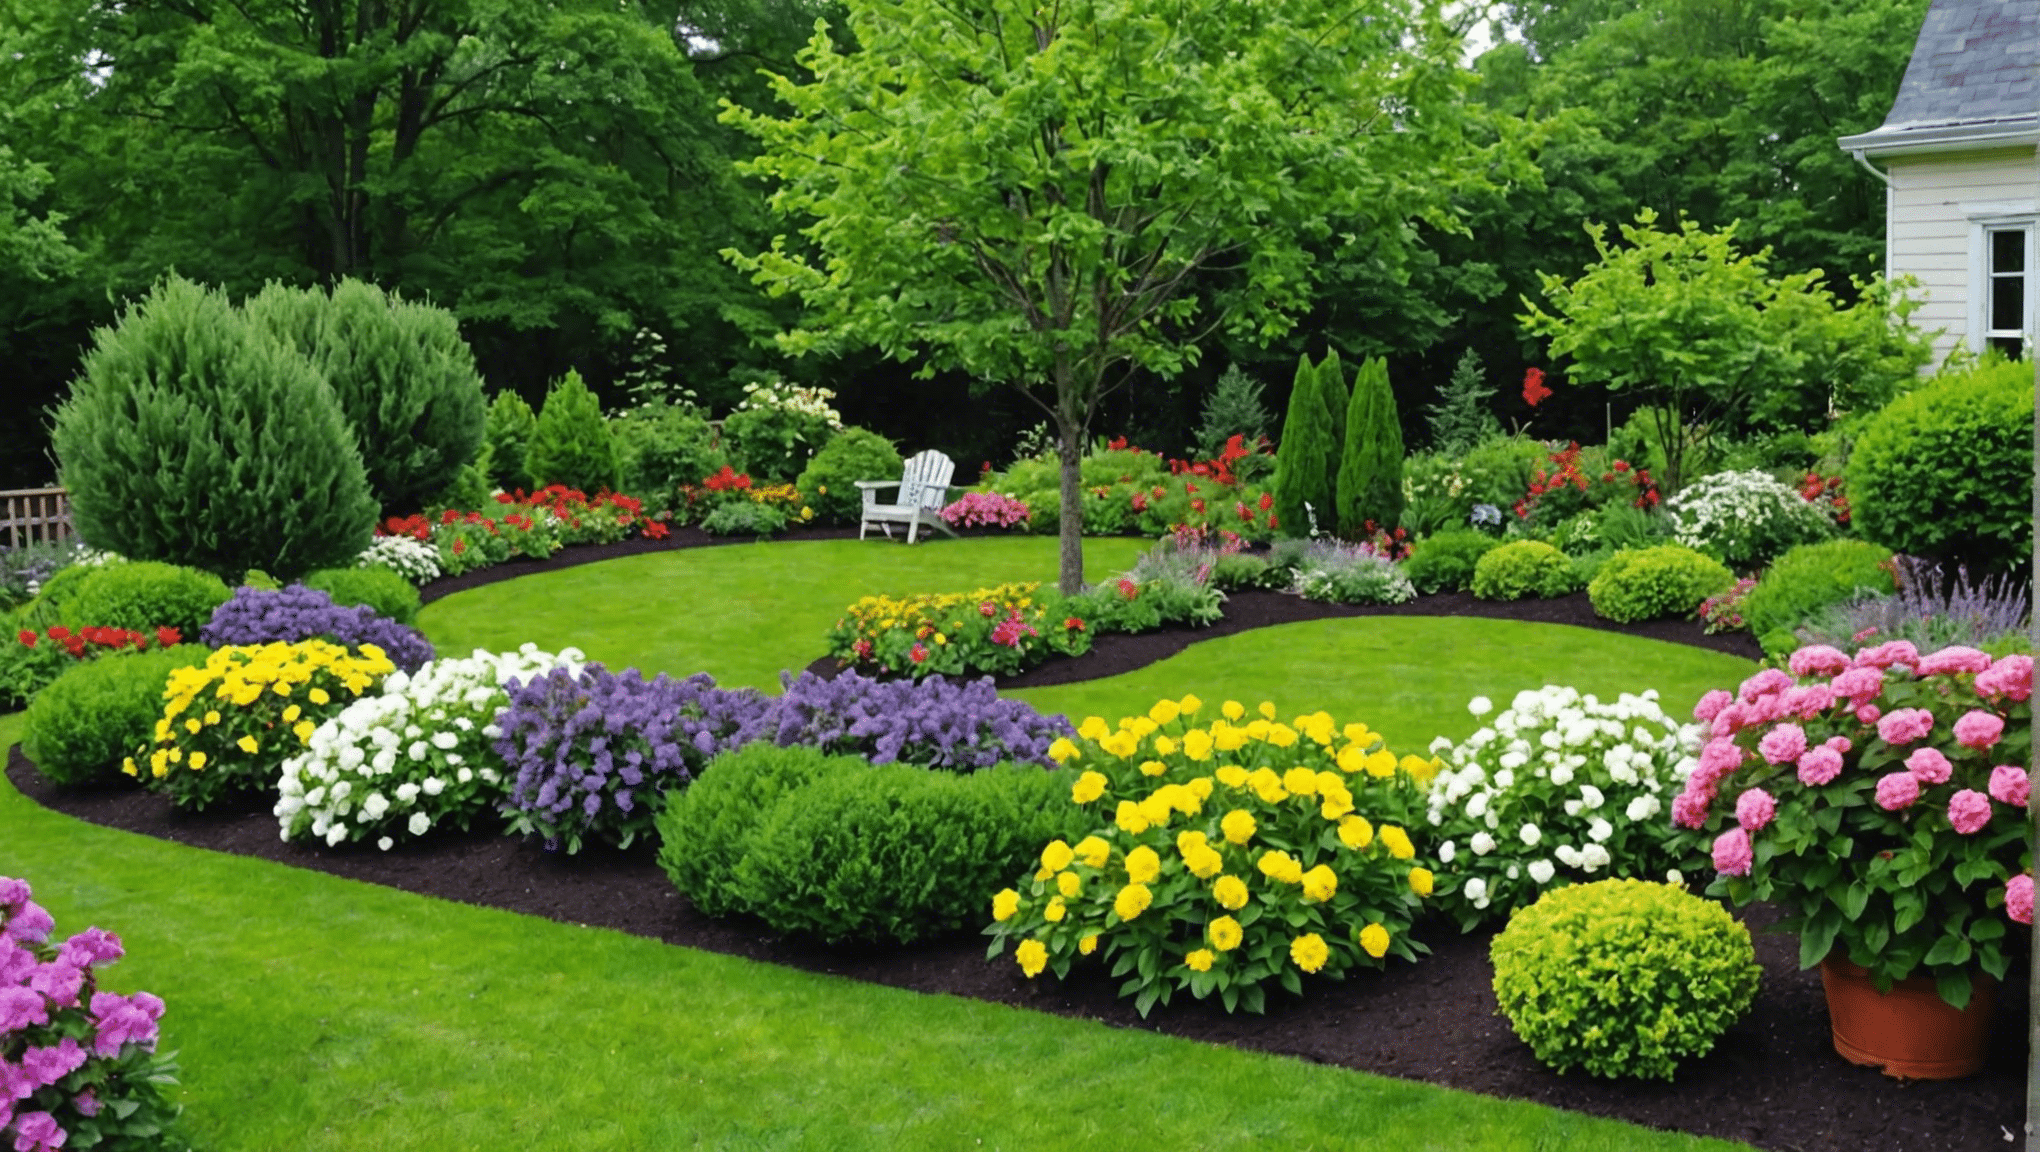 Entdecken Sie tolle Gartentipps und -ideen, um Ihre Gartenarbeit zu verbessern. Machen Sie sich bereit, Ihre Grünfläche mit diesen Top-Tipps und Tricks zu verwandeln.